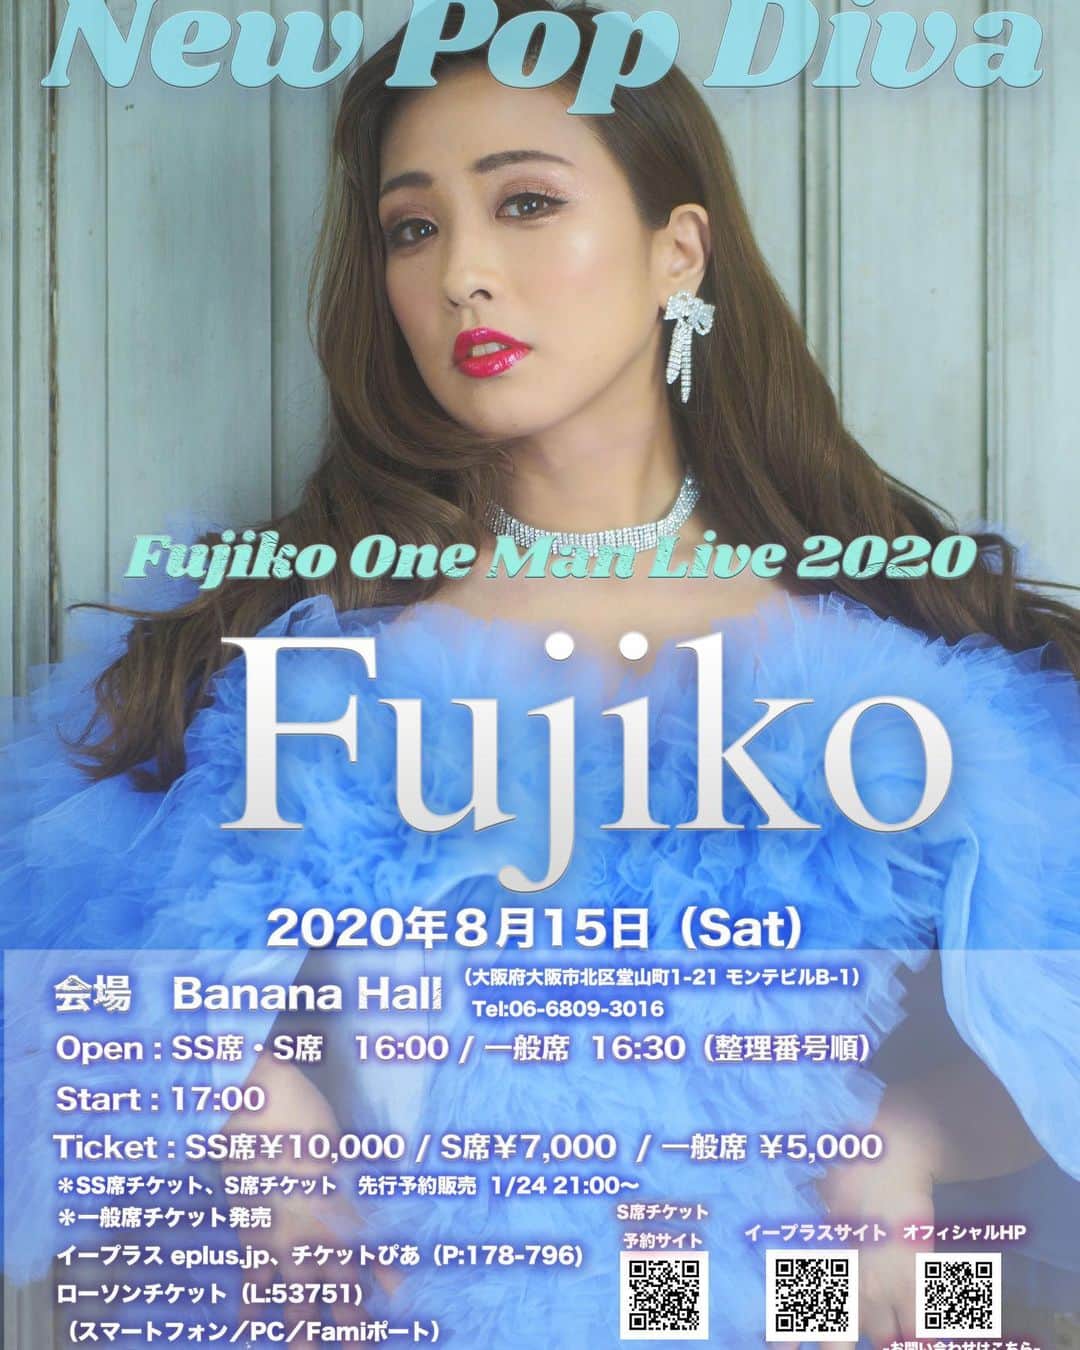 Fujikoのインスタグラム